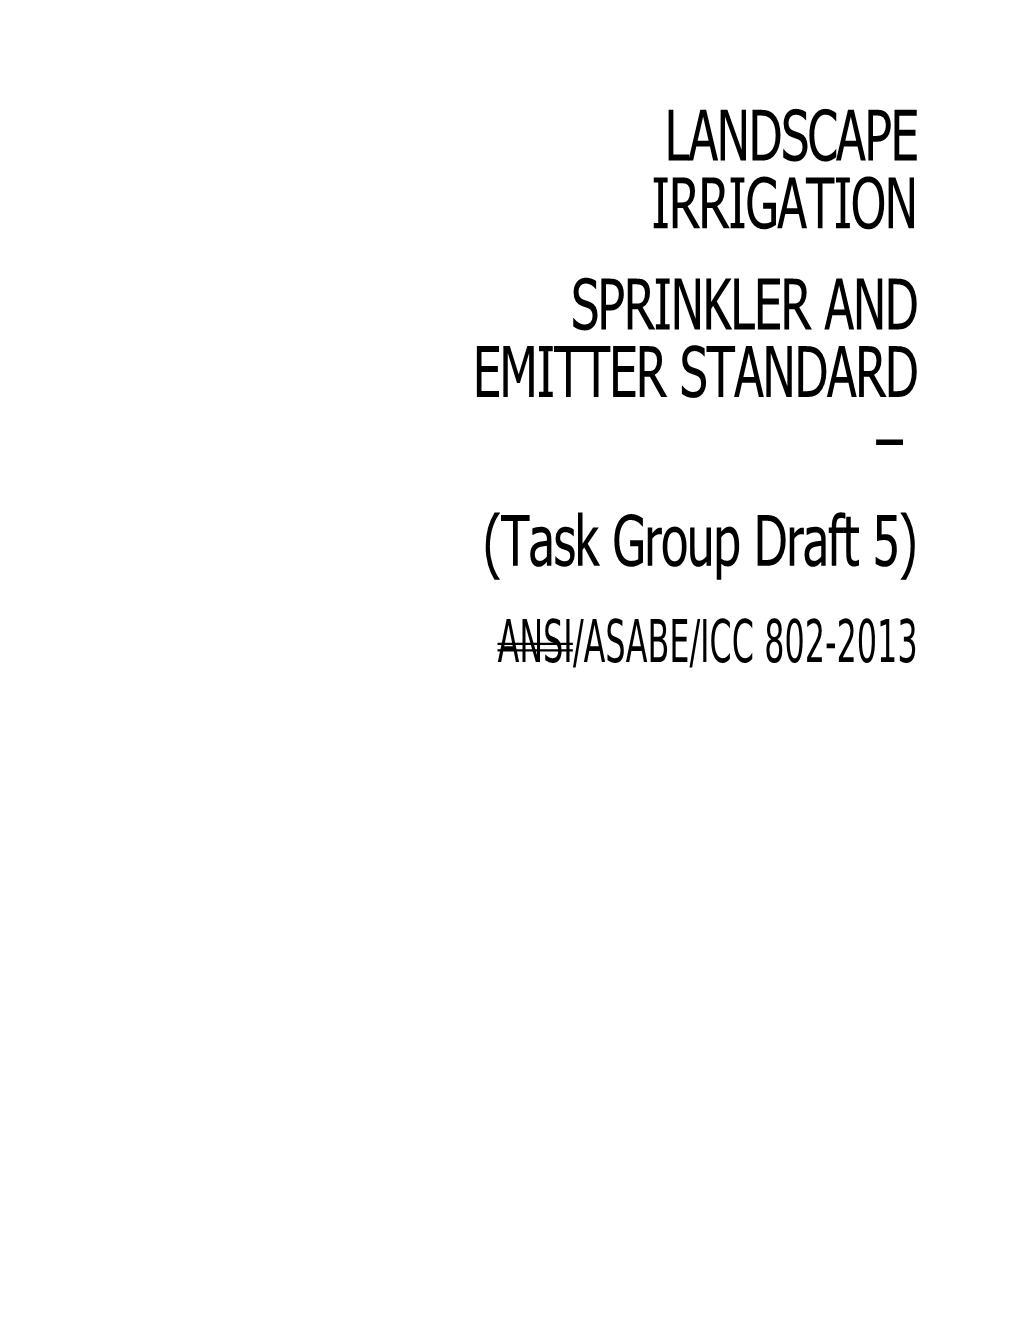 201X ICC Landscape Irrigation Sprinkler and Emitter Standard (Task Group Draft 5)